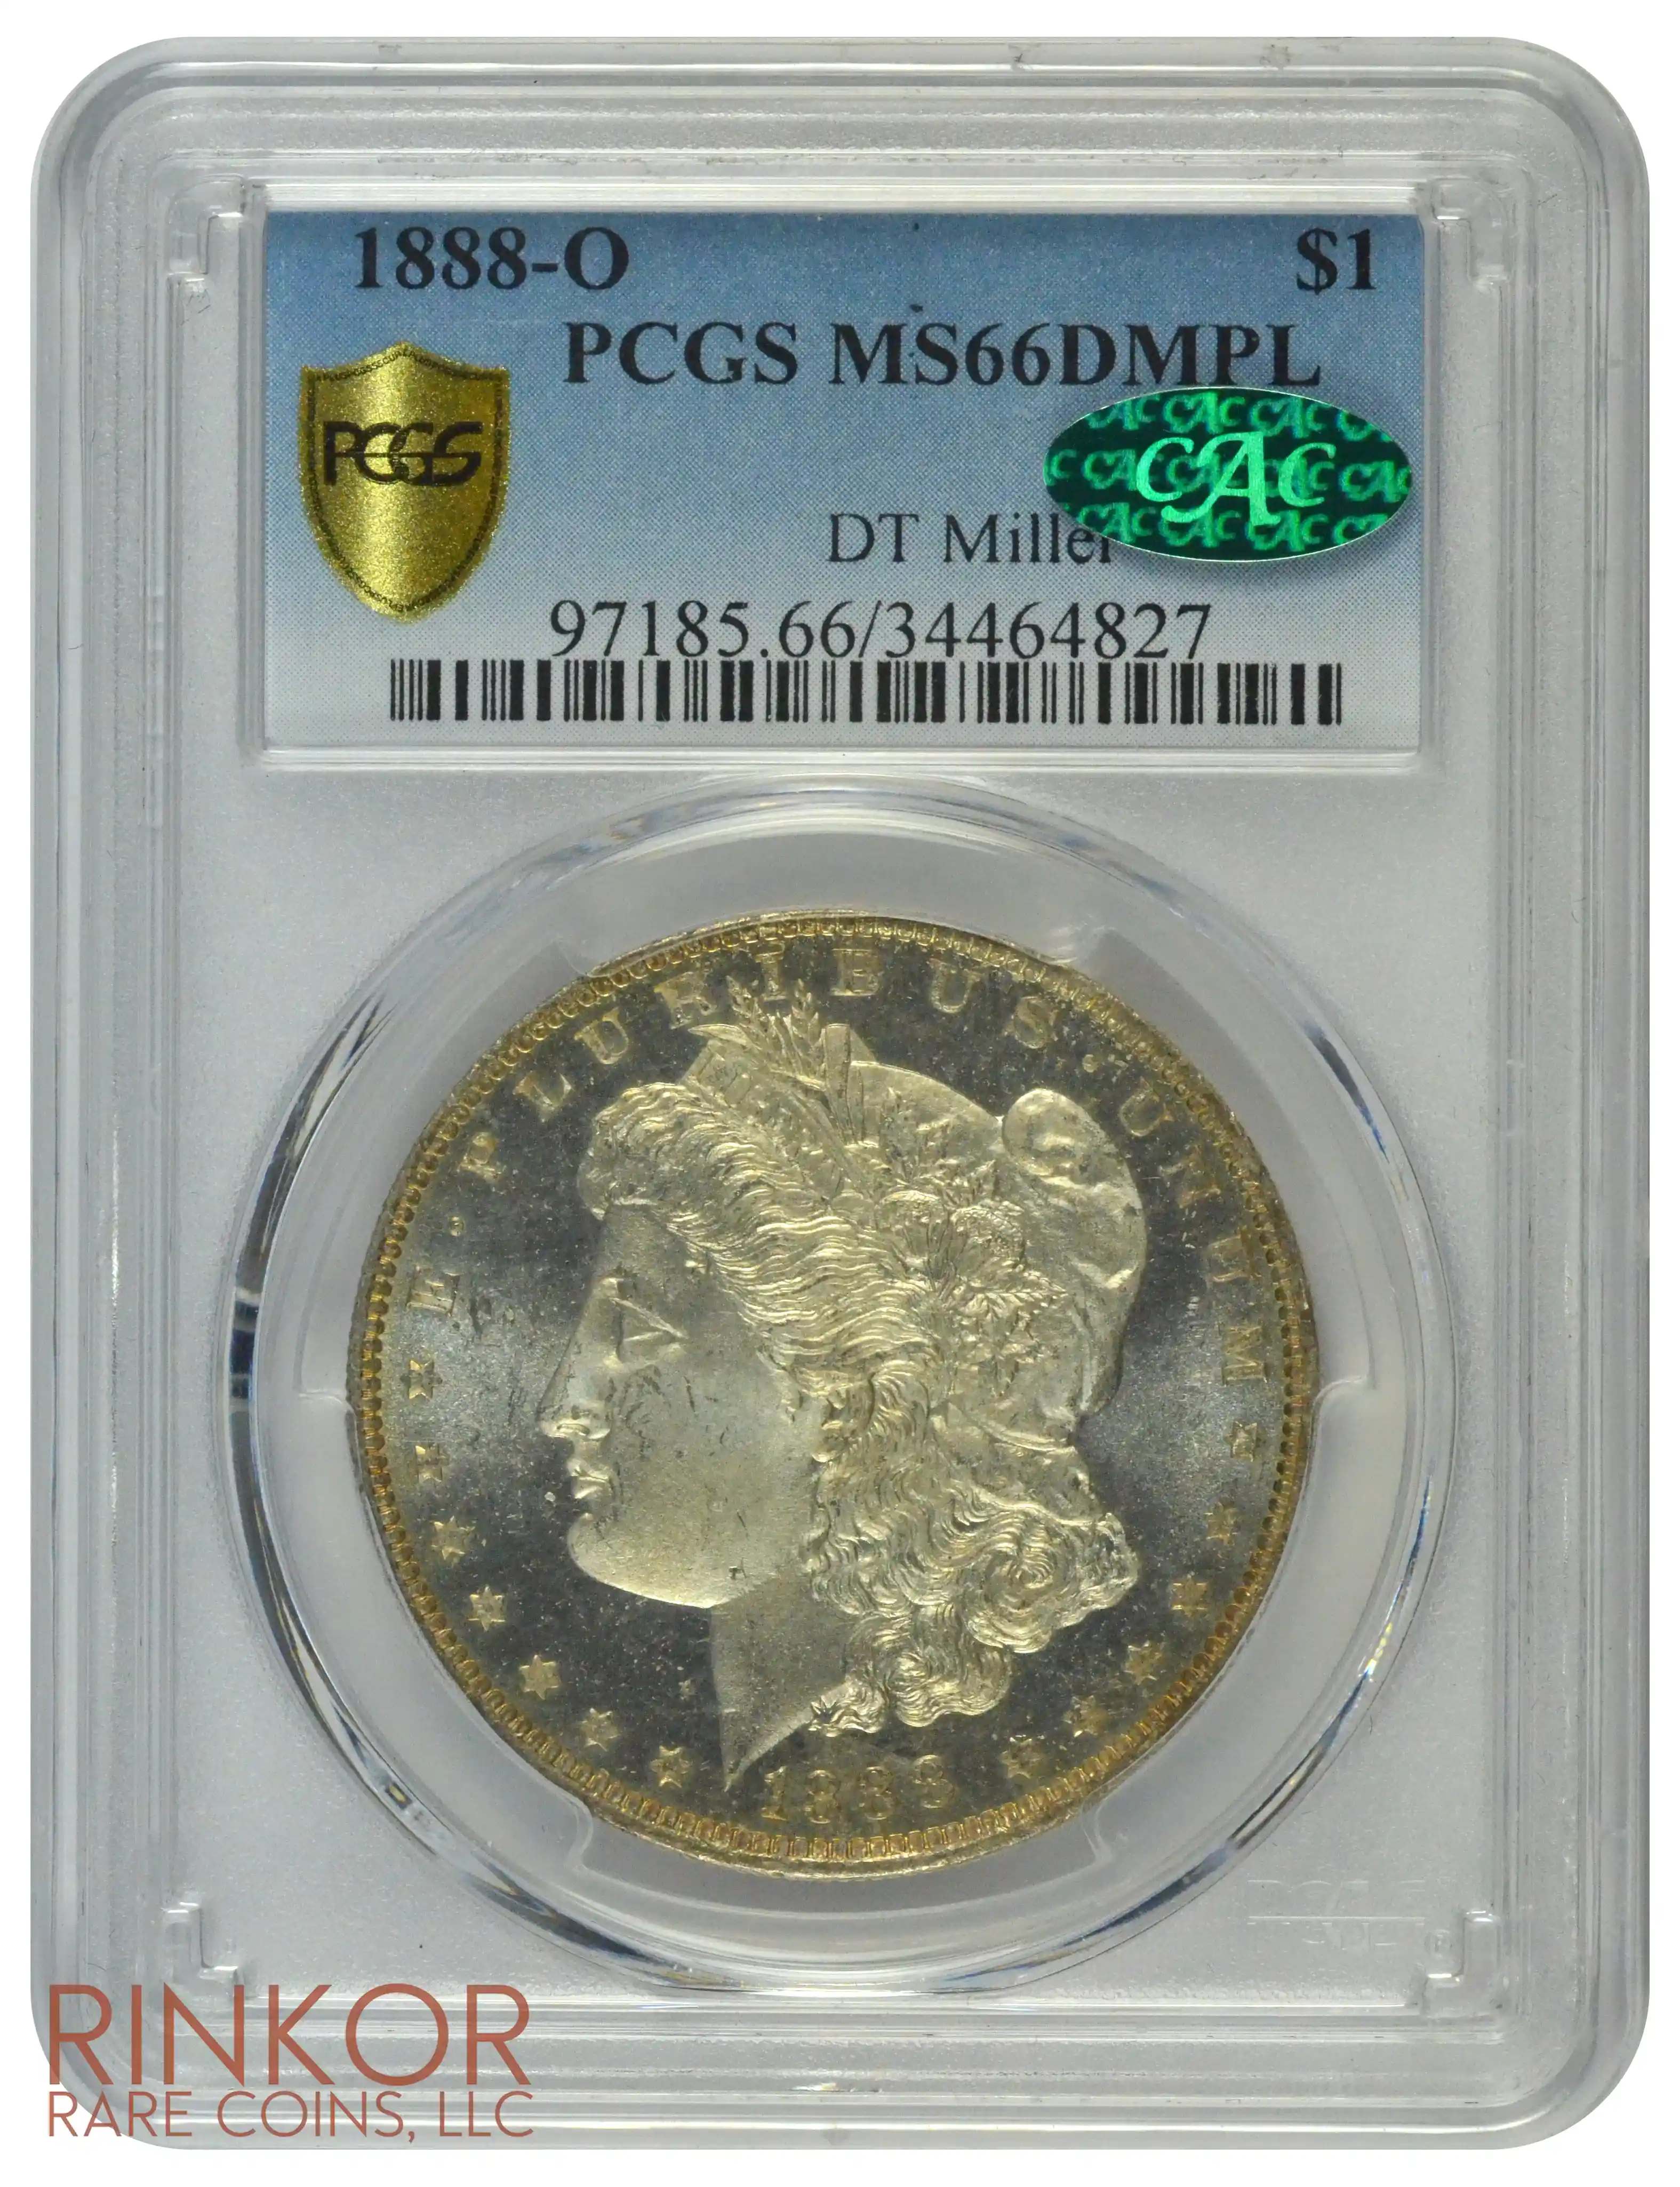 1888-O $1 PCGS MS 66 DMPL CAC